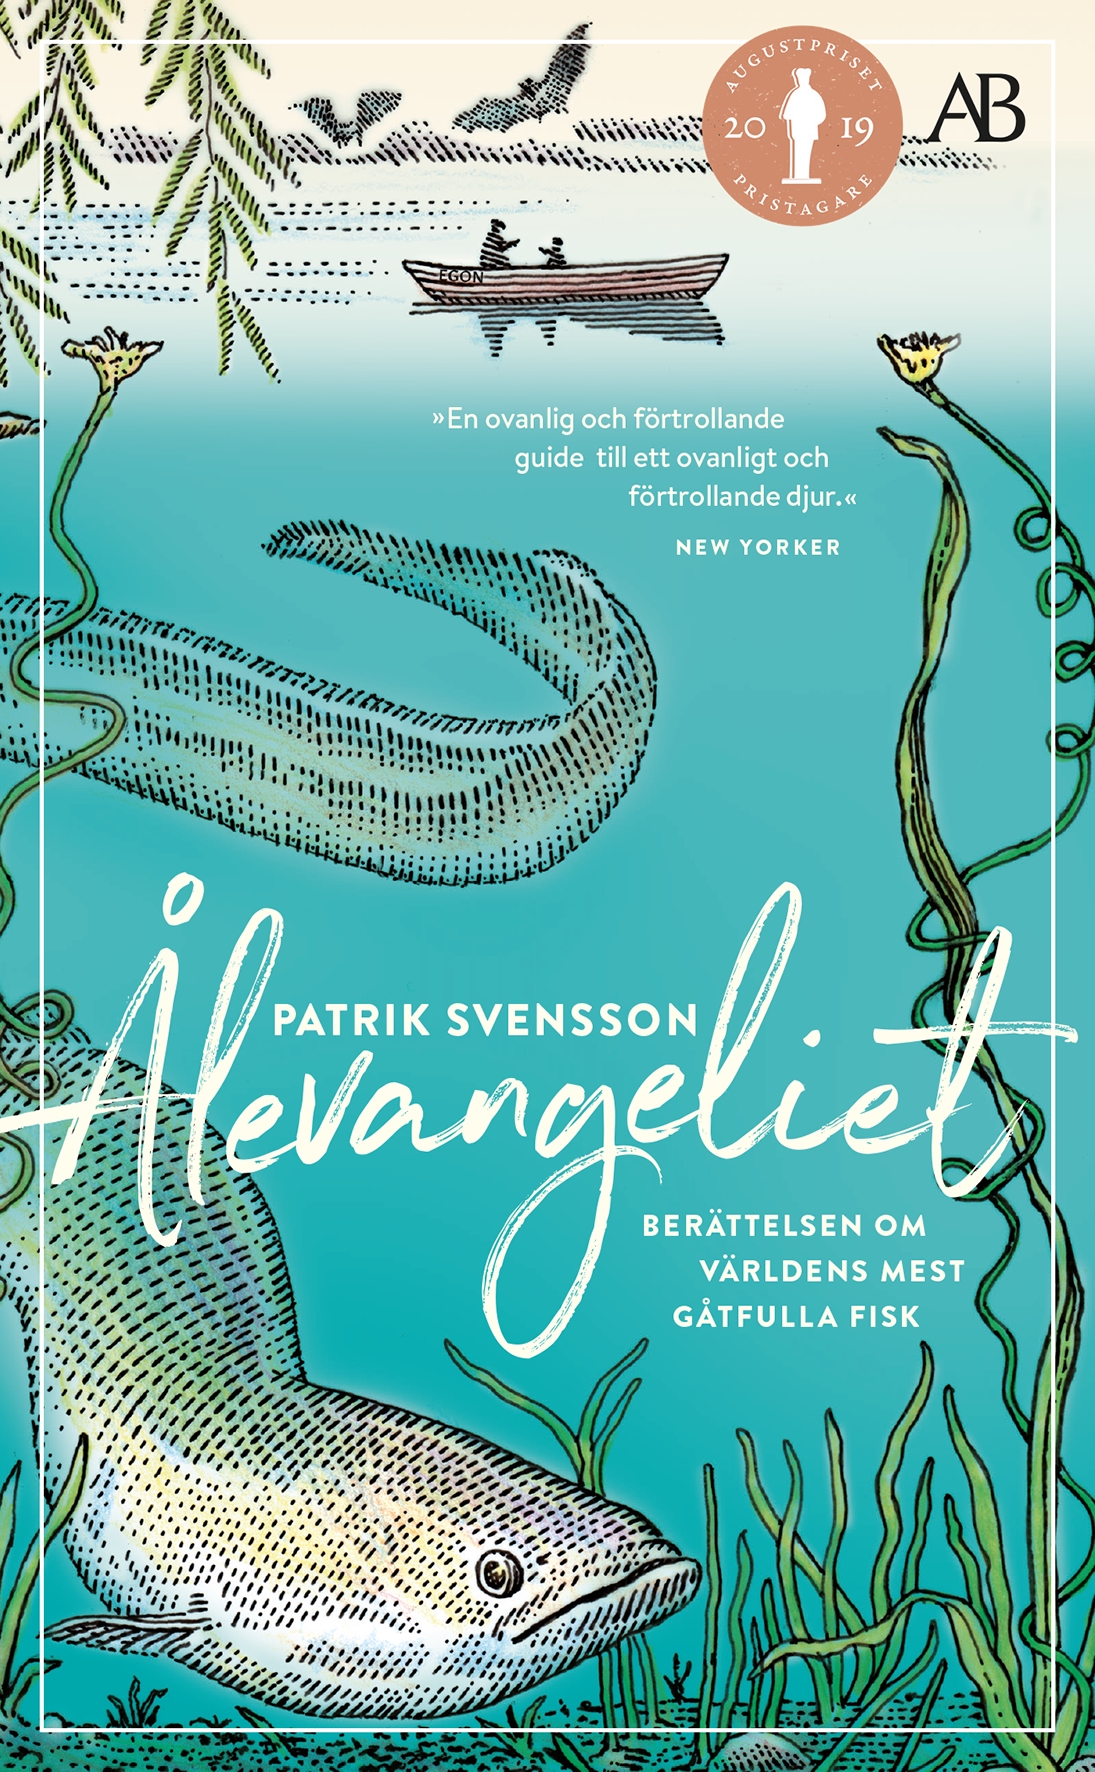 Ålevangeliet : berättelsen om världens mest gåtfulla fisk by Patrik Svensson